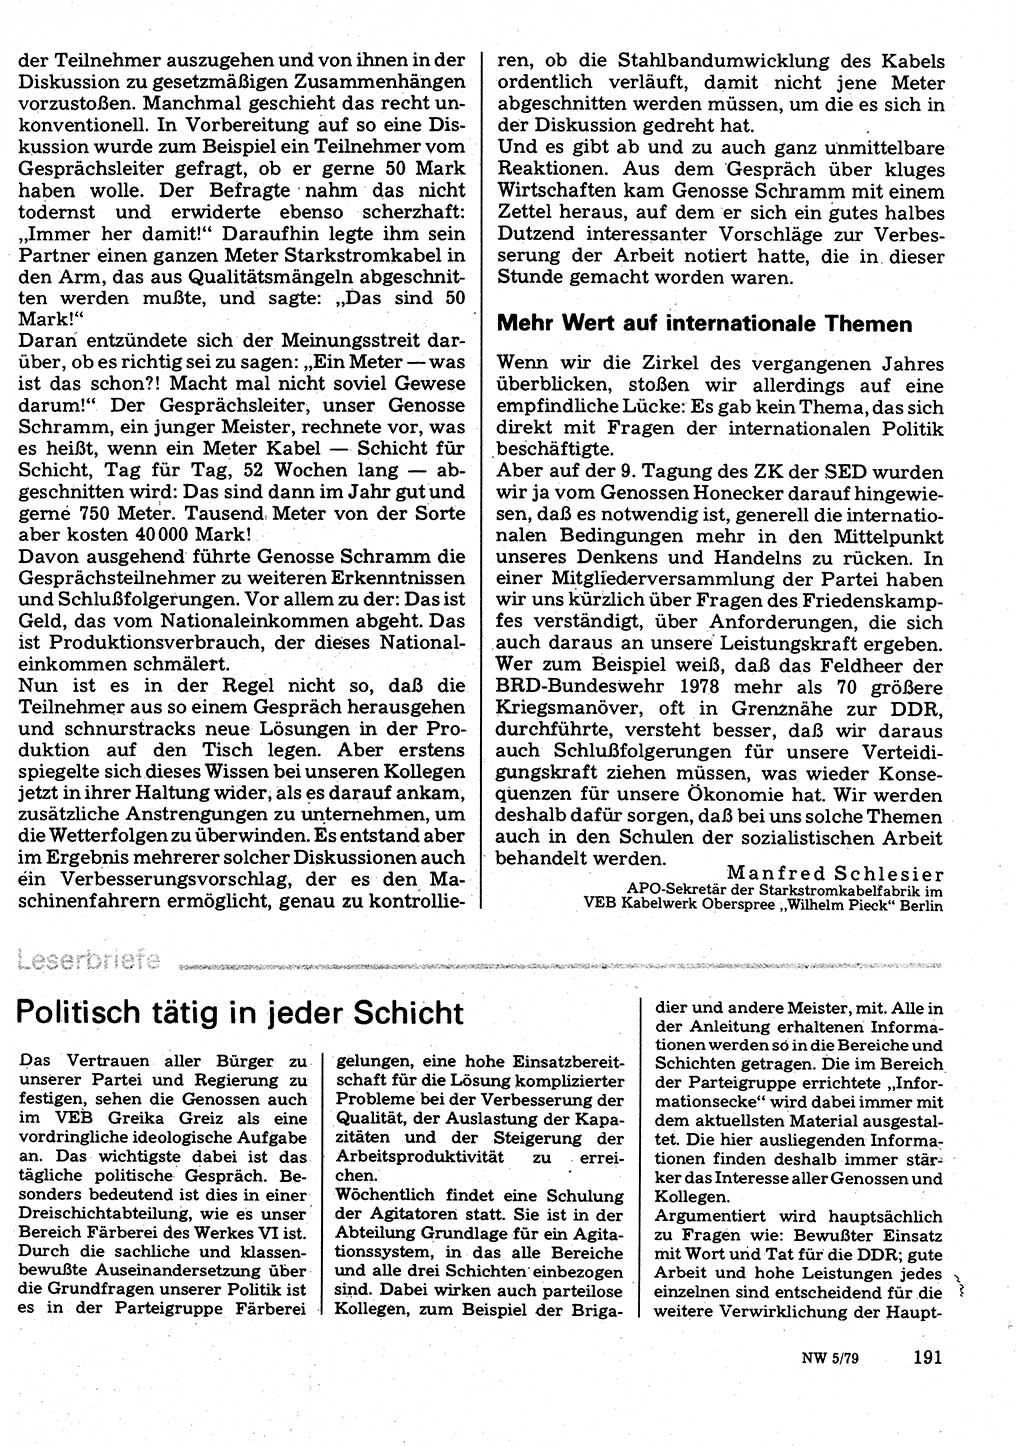 Neuer Weg (NW), Organ des Zentralkomitees (ZK) der SED (Sozialistische Einheitspartei Deutschlands) für Fragen des Parteilebens, 34. Jahrgang [Deutsche Demokratische Republik (DDR)] 1979, Seite 191 (NW ZK SED DDR 1979, S. 191)